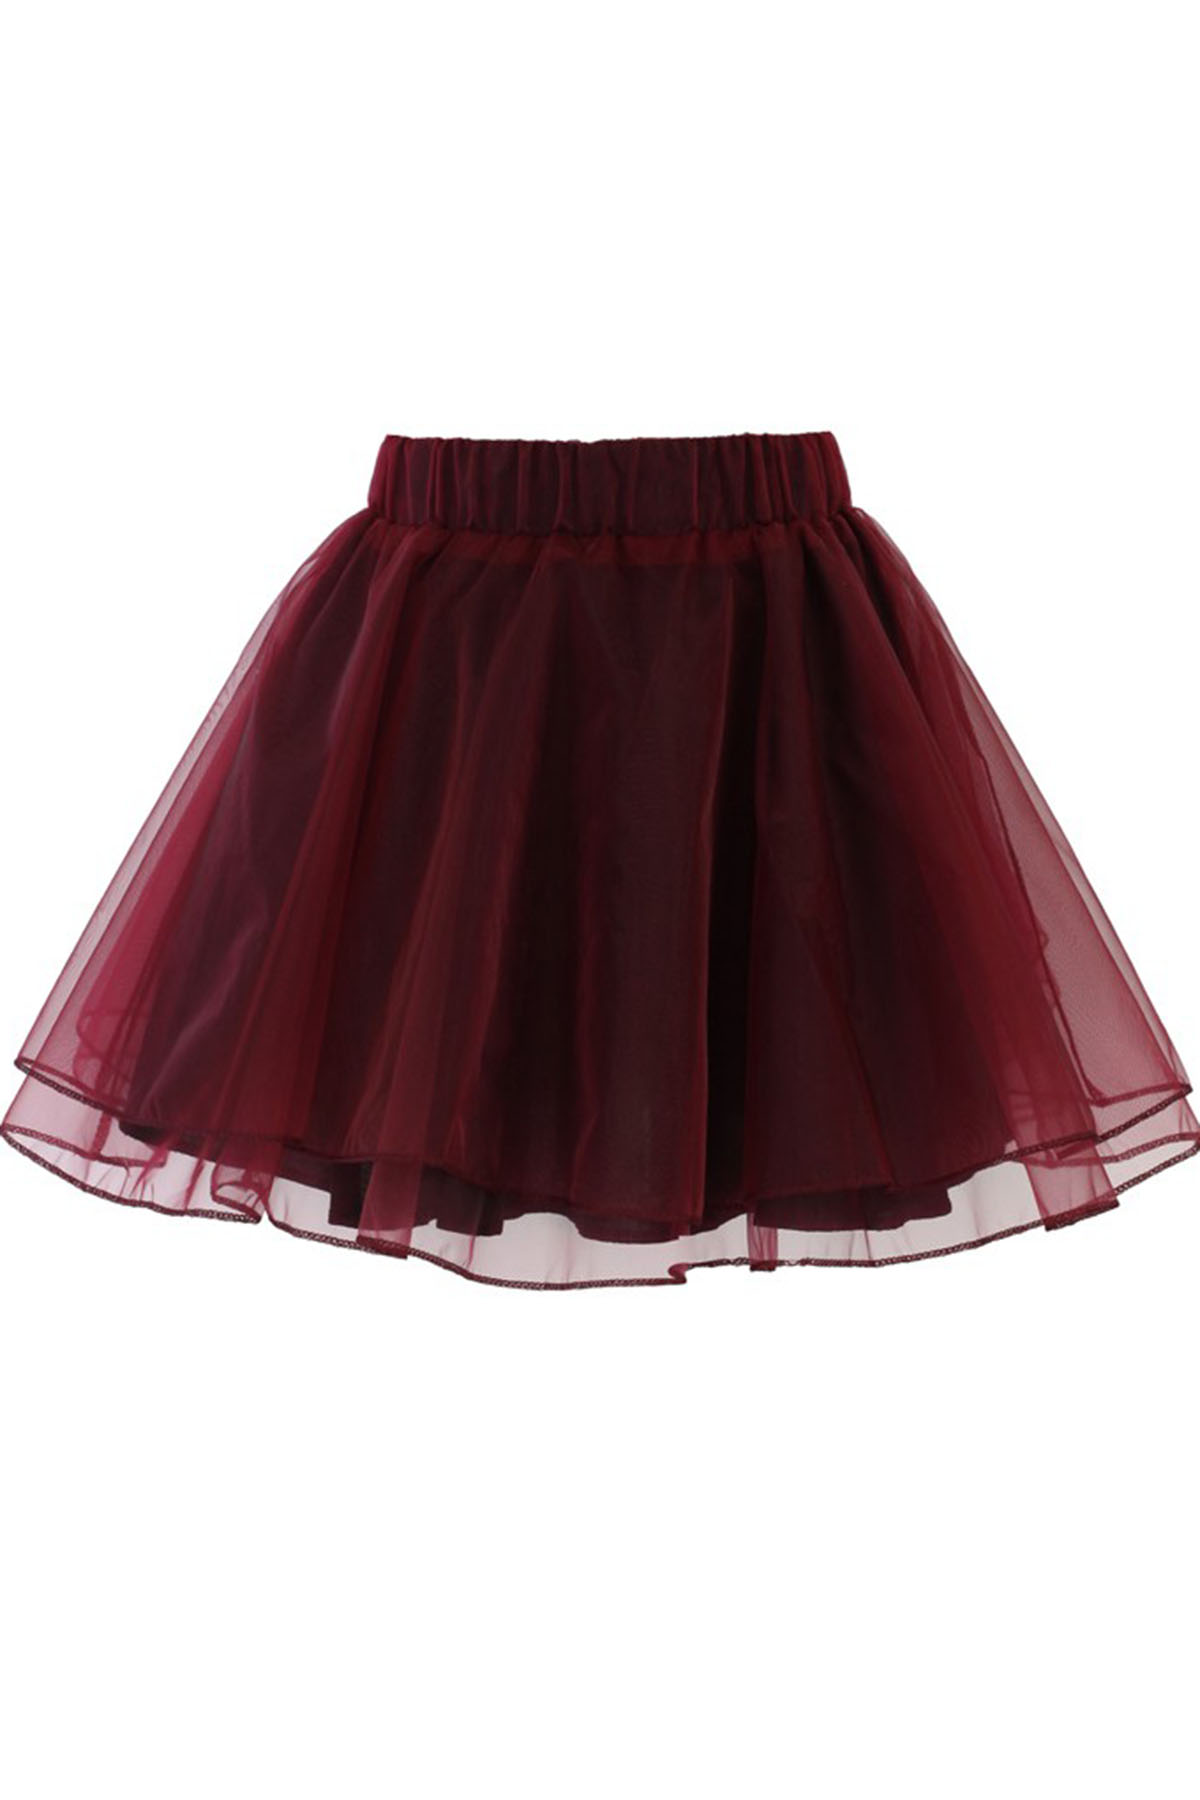 Burgundy Tulle Mini Skirt, Party Dress, Cute Short Skirt